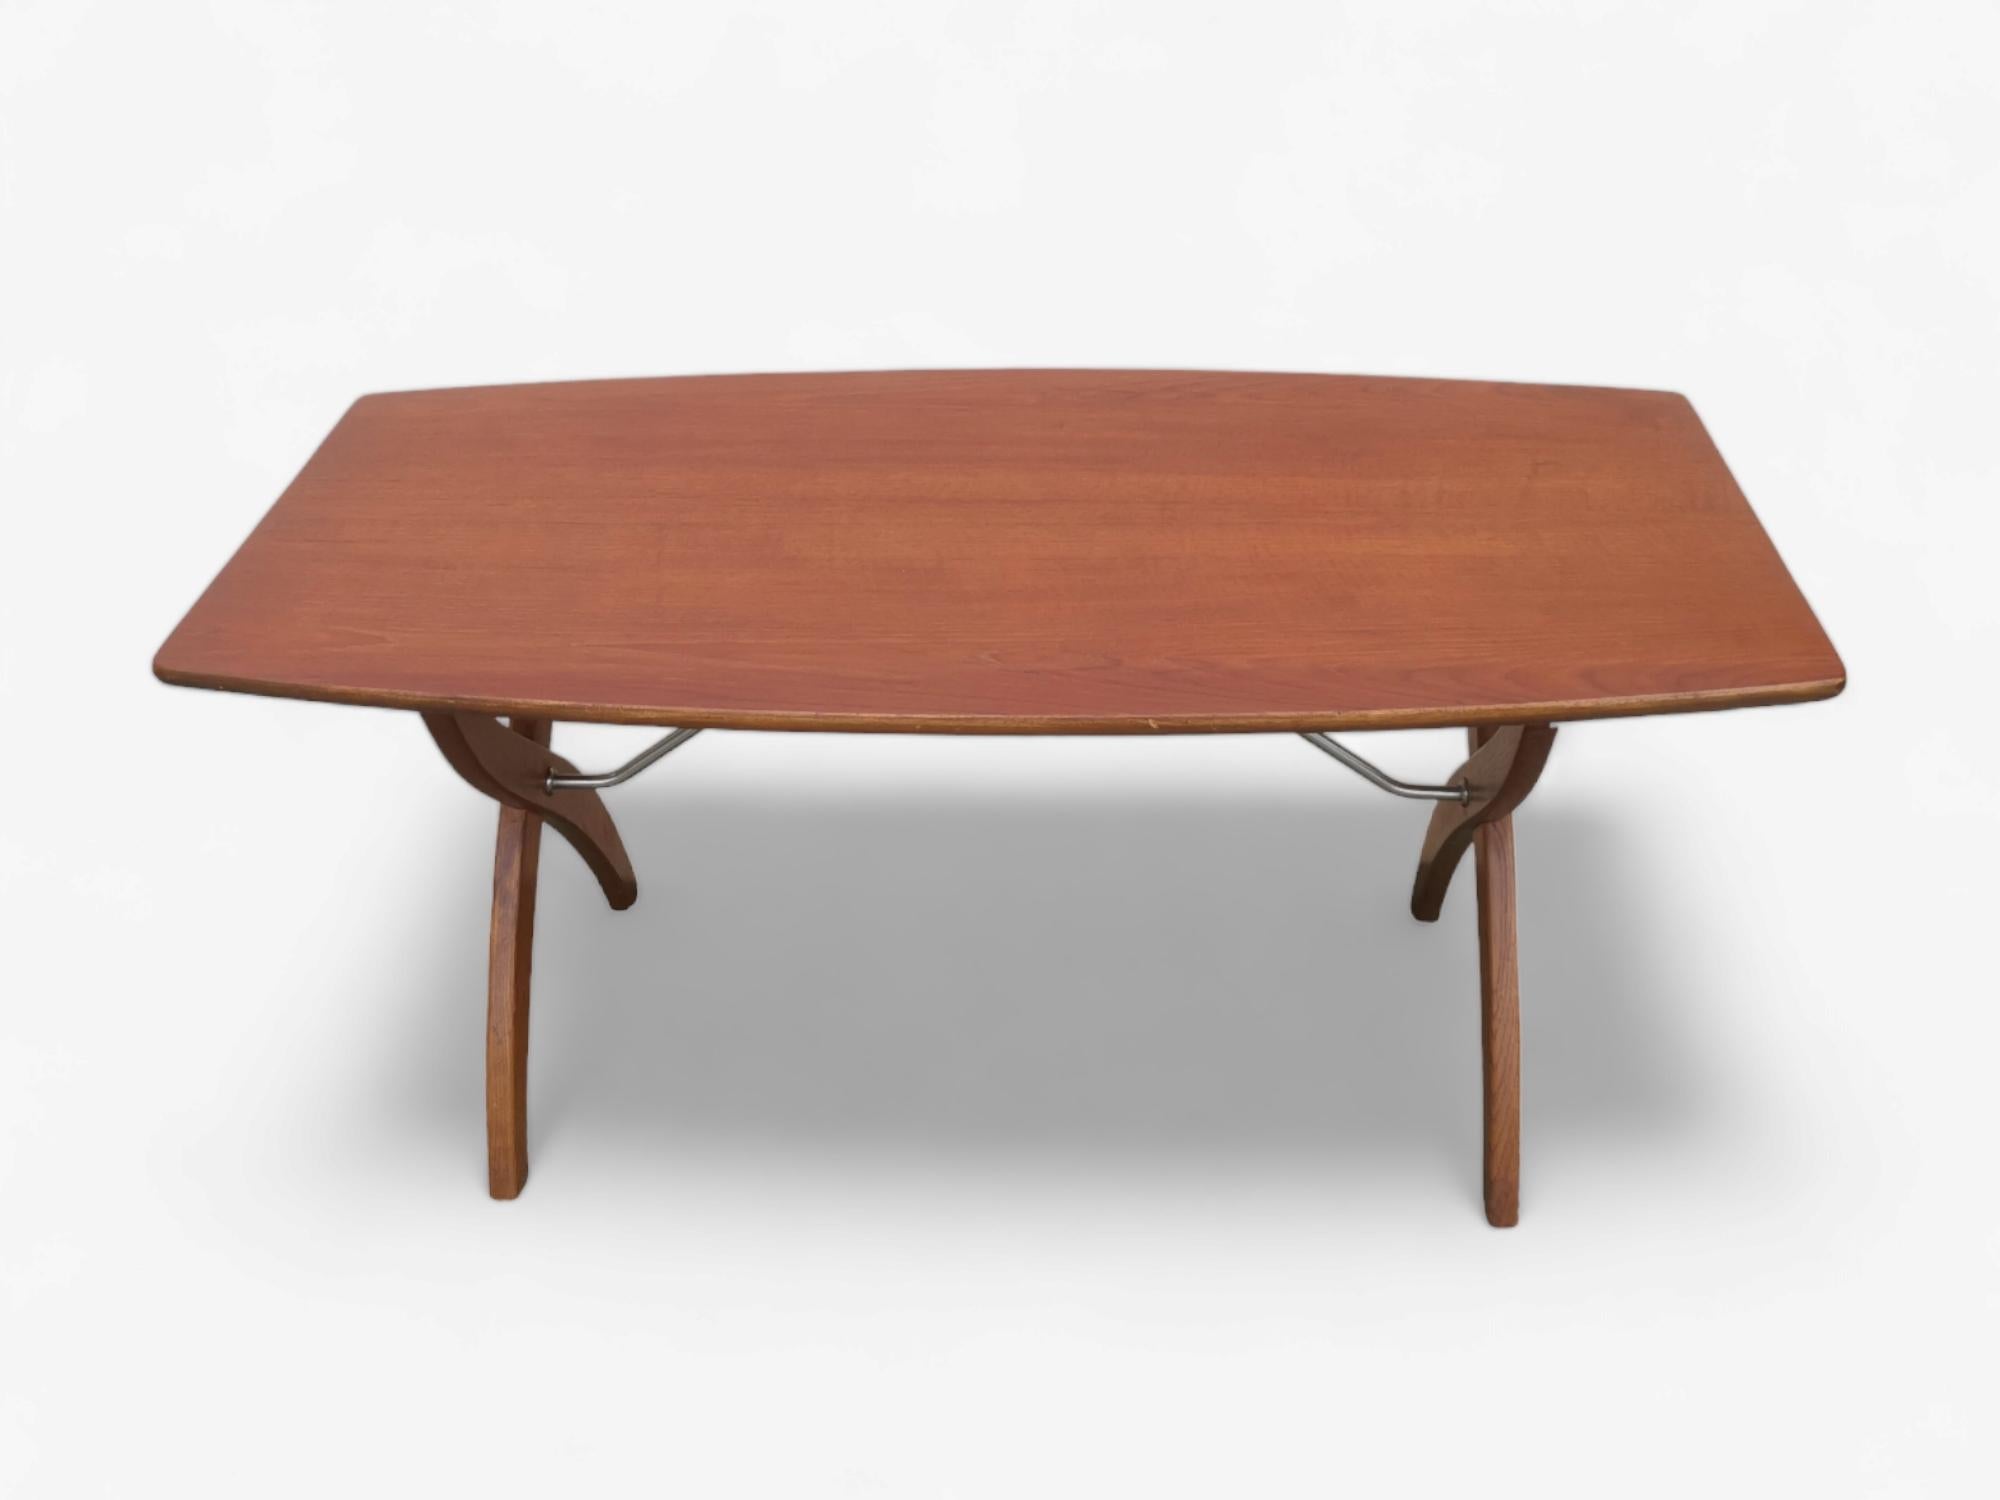 Scandinavian Modern Teak Coffee Table with Cross Legs